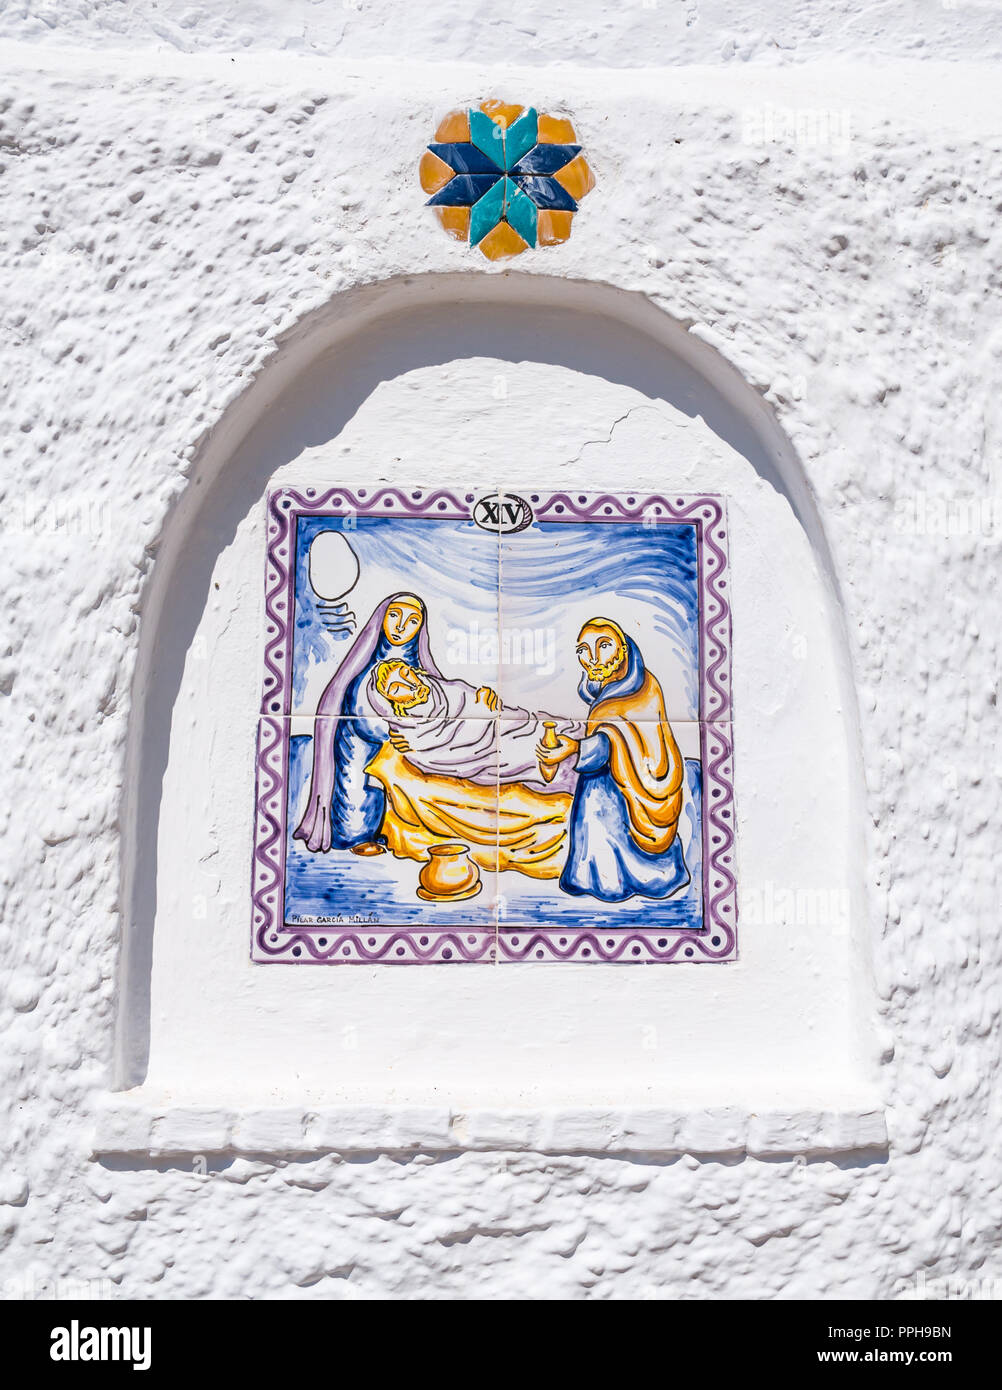 Carreaux de céramique colorée sur le mur représentant la foi catholique quatorzième station de la croix, Salares, Axarquía, Andalousie, Espagne Banque D'Images